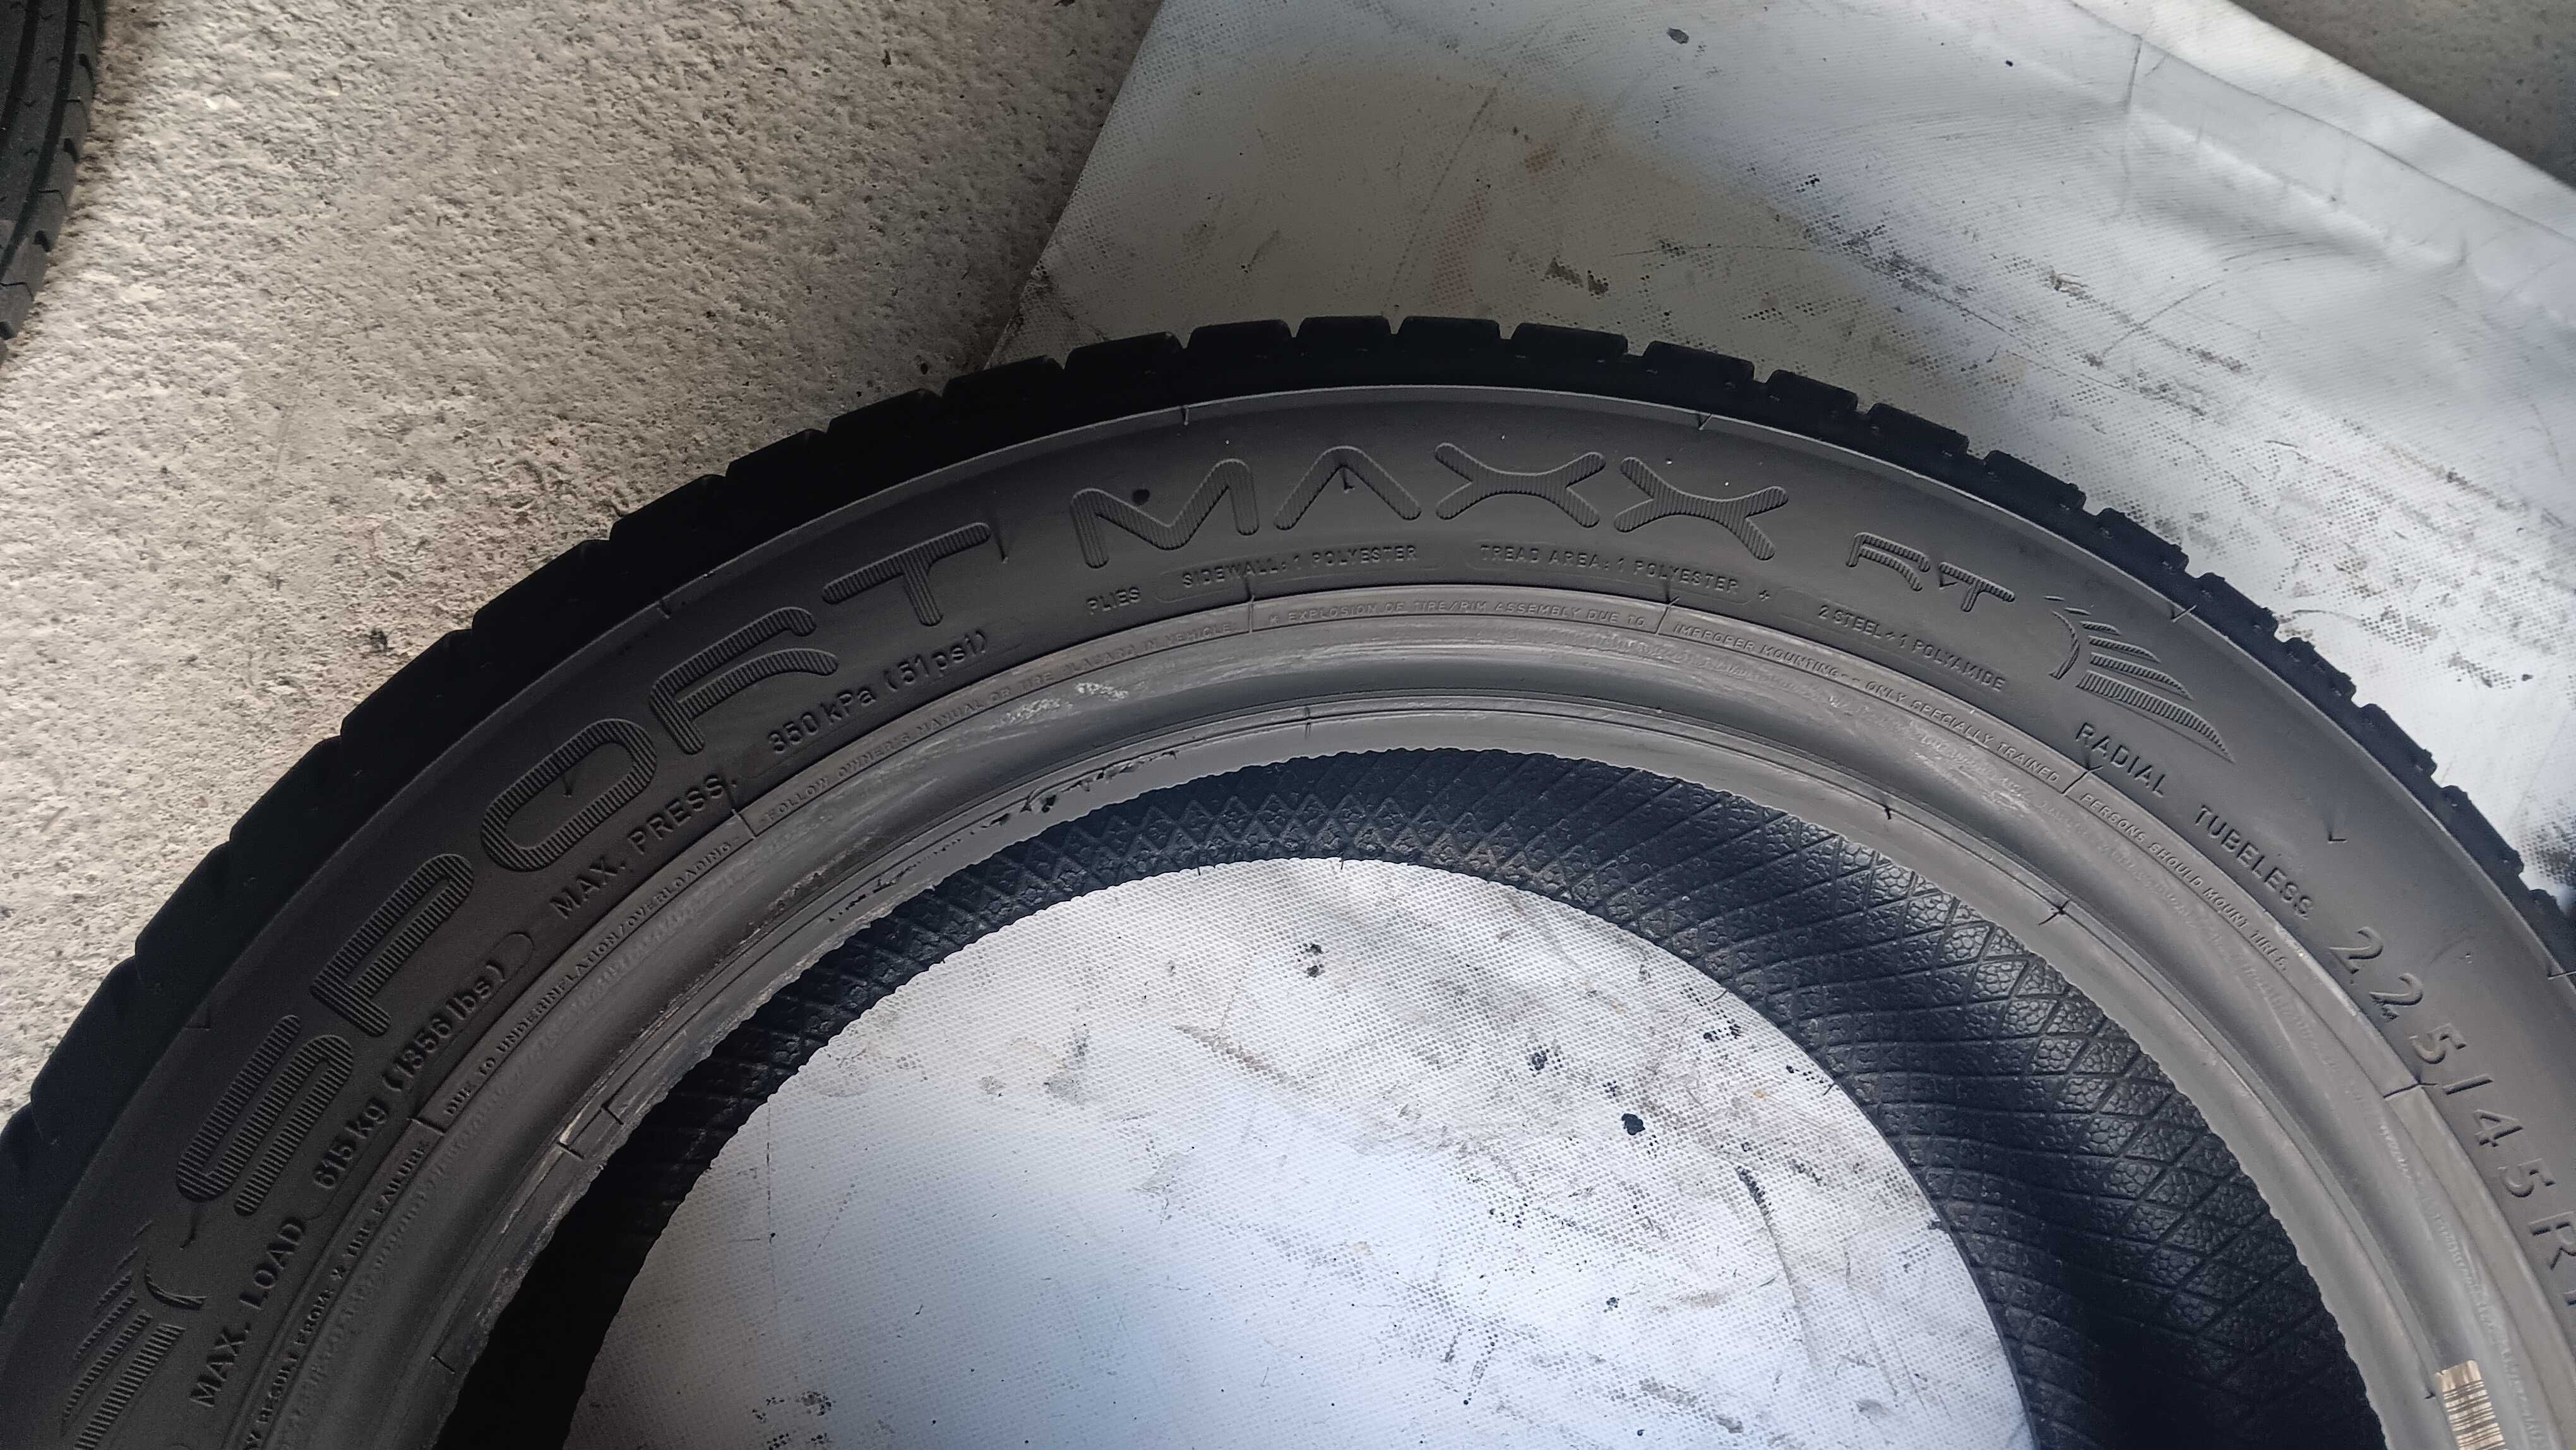 225/45/17 Dunlop sport maxx